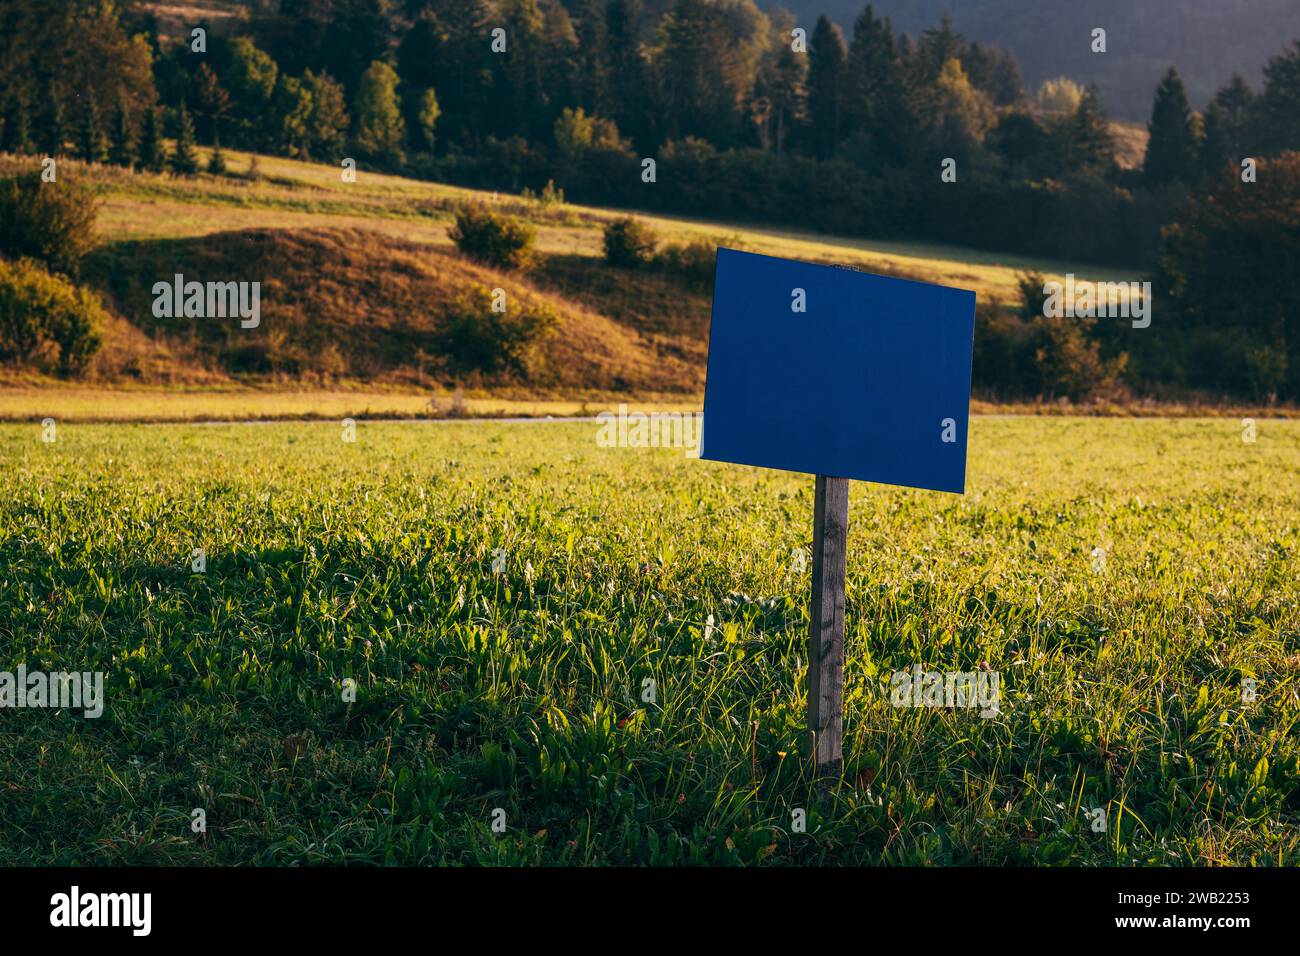 Mockup de madera del cartel de la información azul en prado alpino escénico en la mañana, enfoque selectivo Foto de stock